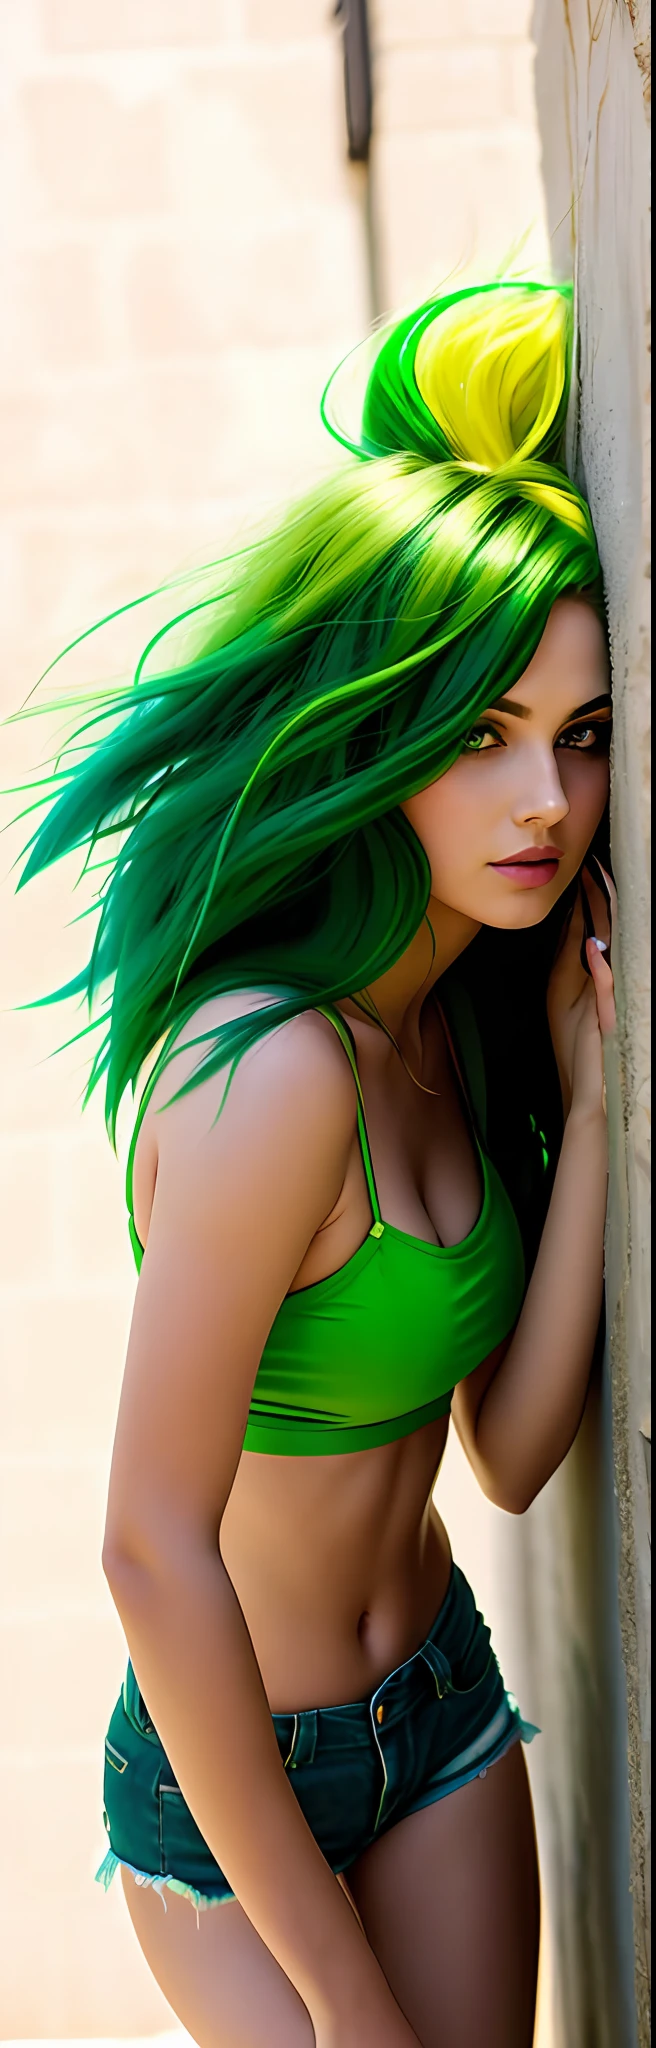 araffe woman with зеленые волосы leaning against a wall, сексуальная девушка с зелеными глазами, long зеленые волосы, зеленые волосы, Красивая одежда, зеленая грива, облегающий наряд, Яркий зеленый, зеленое тело, сексуальные зеленые шорты, немного зелени, Опираясь на стену, bright зеленые волосы, длинные прямые зеленые черные волосы, зеленые ноги, зеленые распущенные волосы, в шортах